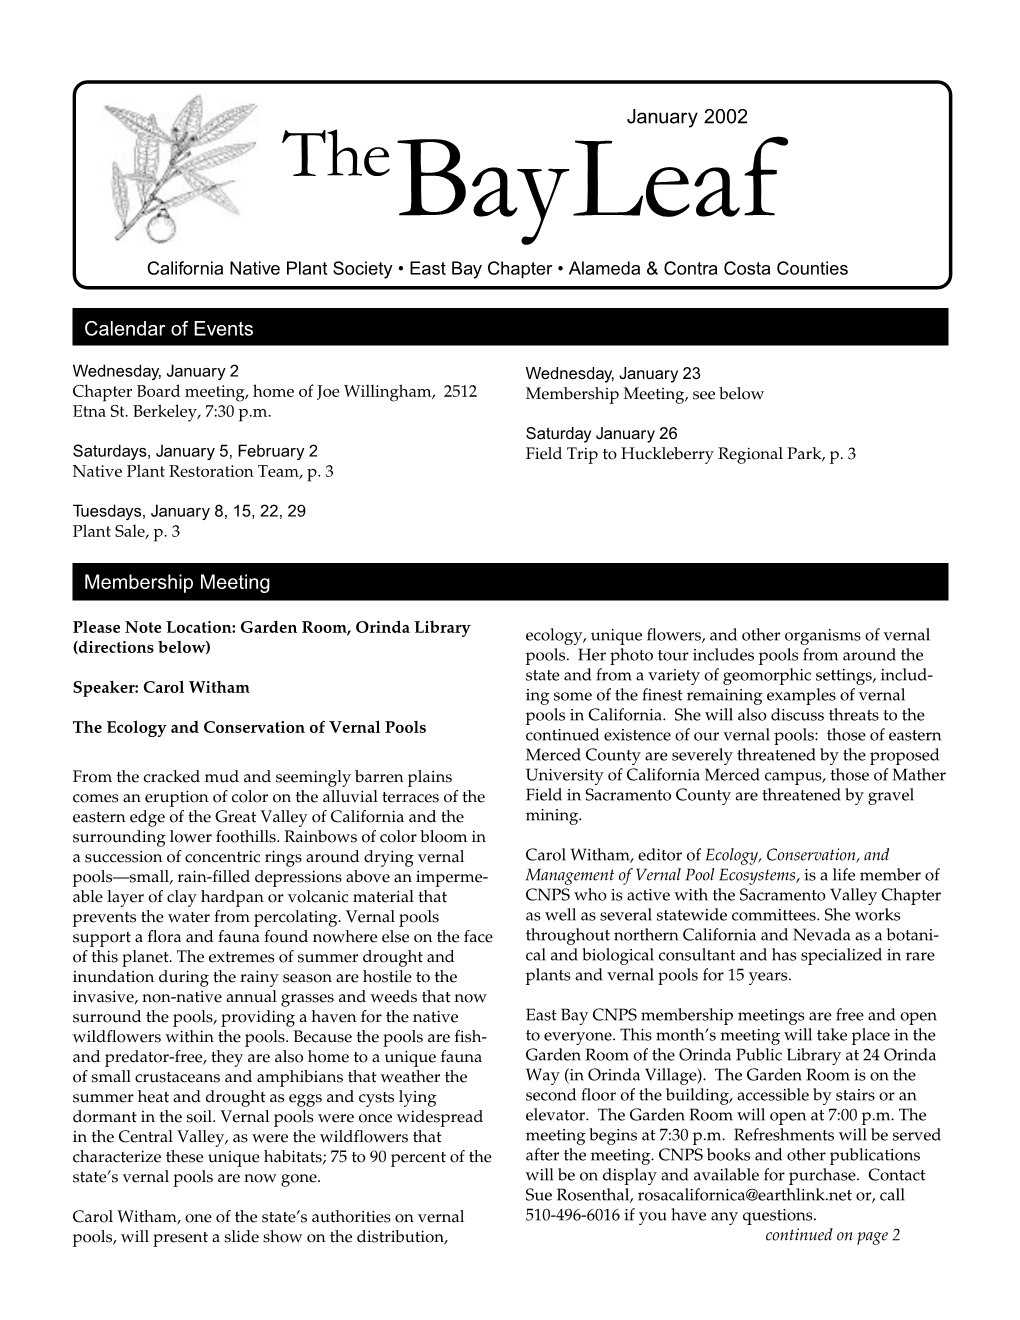 Bay Leaf July-August 2001